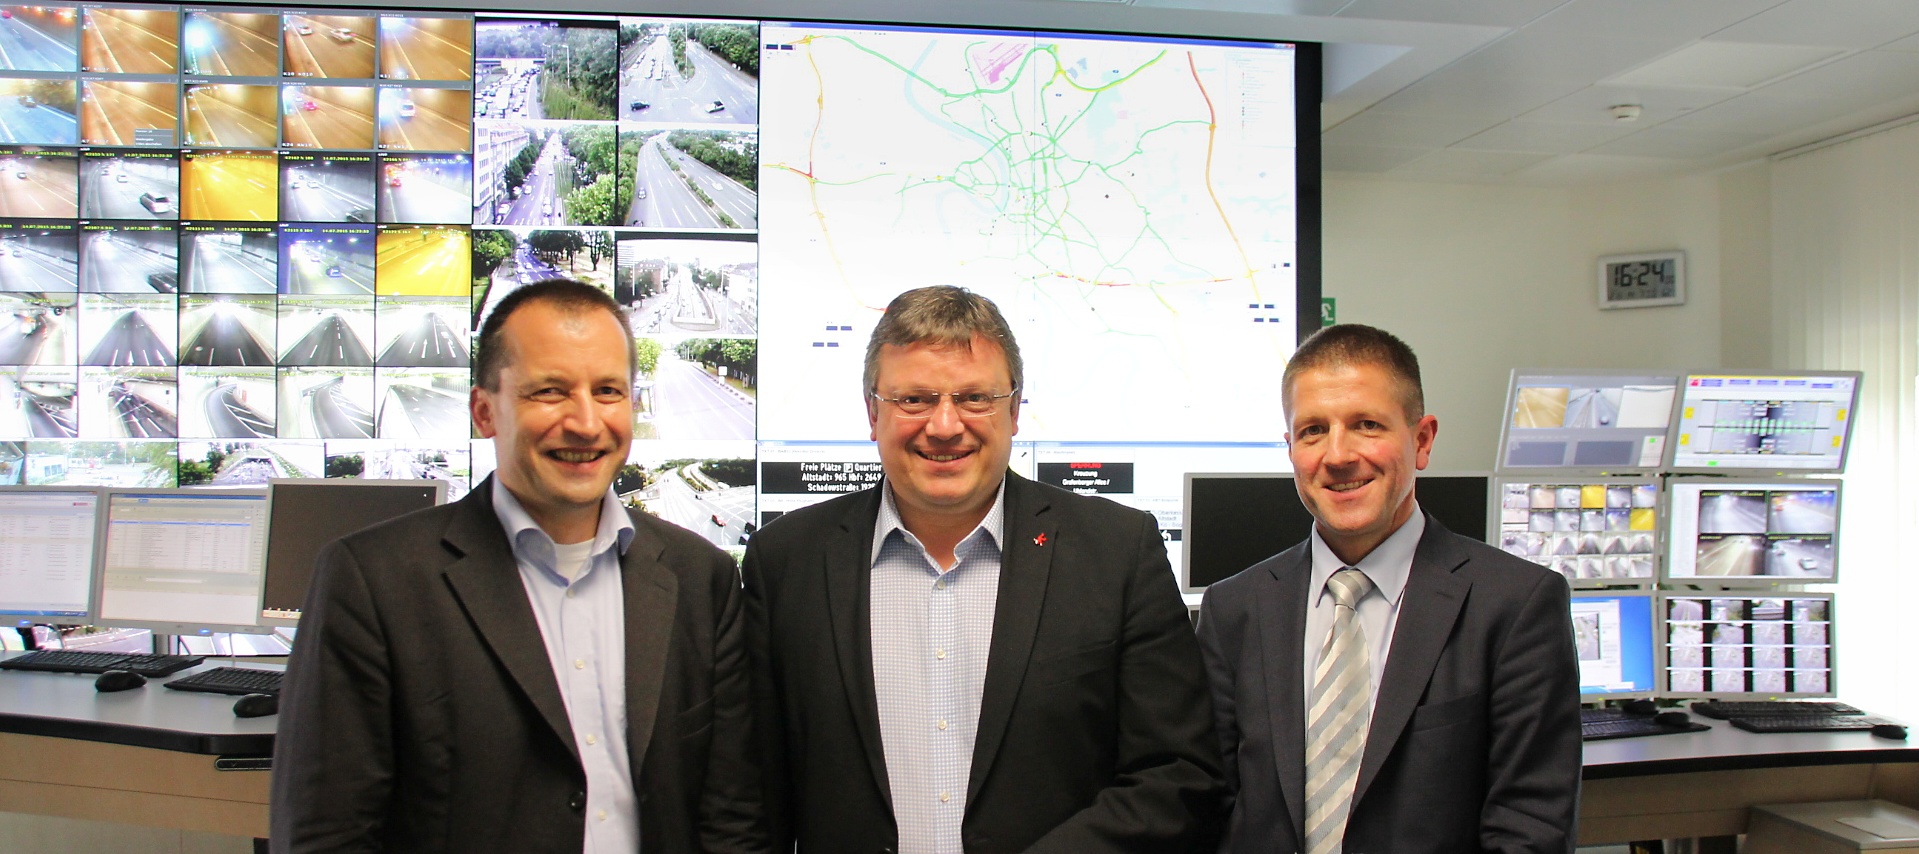 Das Fahren sicherer, effizienter und umweltschonender machen: Andreas Rimkus MdB besuchte die Tunnel- und Verkehrsleitzentrale Düsseldorf und informierte sich vor Ort über die Umsetzung des Bundesprogrammes UR:BAN